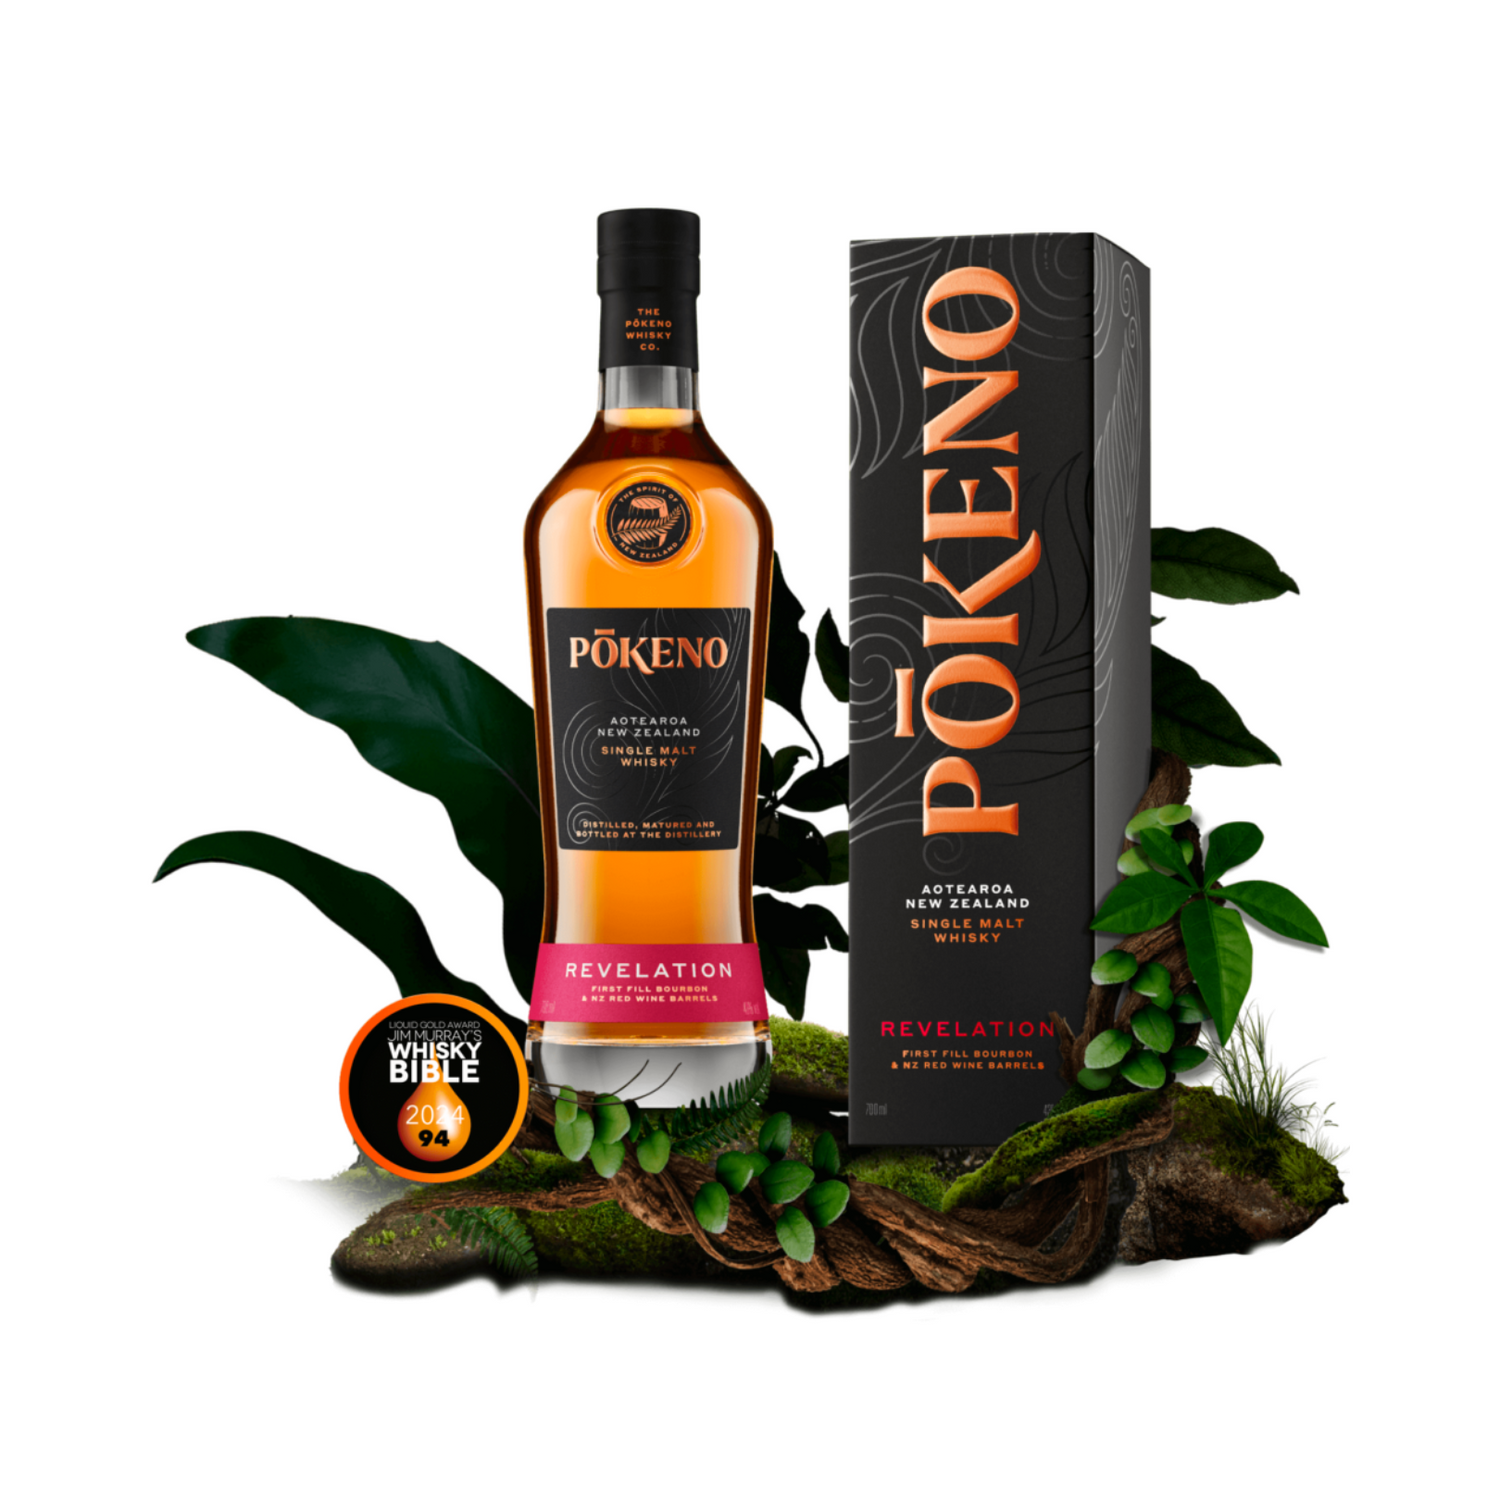 Pōkeno 'REVELATION' New Zealand Single Malt Whisky